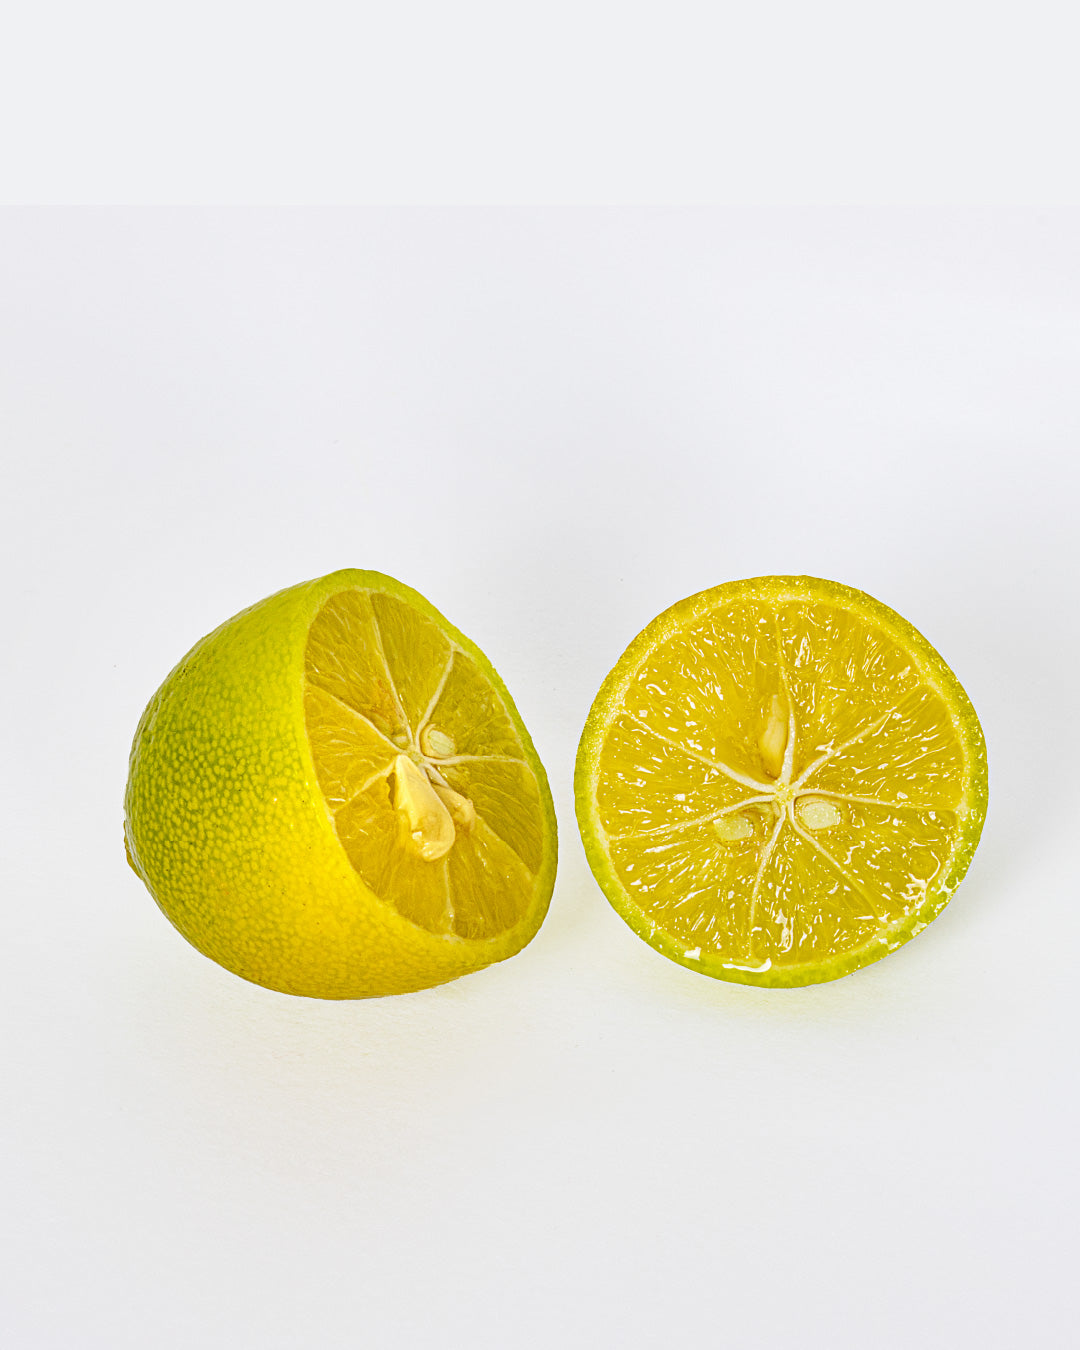 Pianta di Limone Limequat Limonia x Fortunella - altezza 80/90 cm